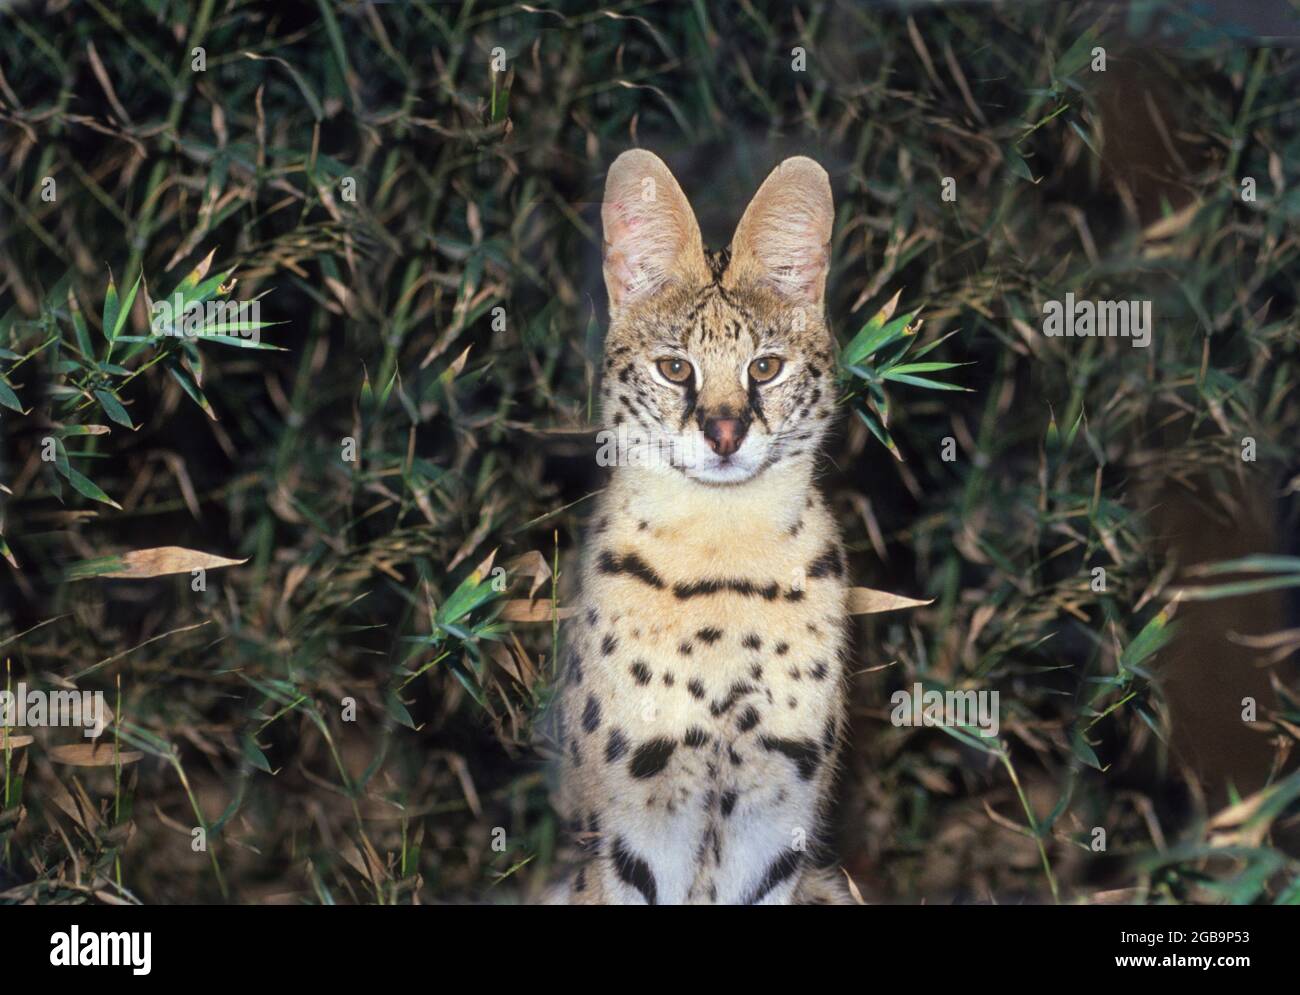 Porträt eines Servals (Felis serval) der Serval ist eine mittelgroße fleischfressende Wildkatze. Es hat lange Beine, steht bei 60 Zentimeter zur Schulter und re Stockfoto